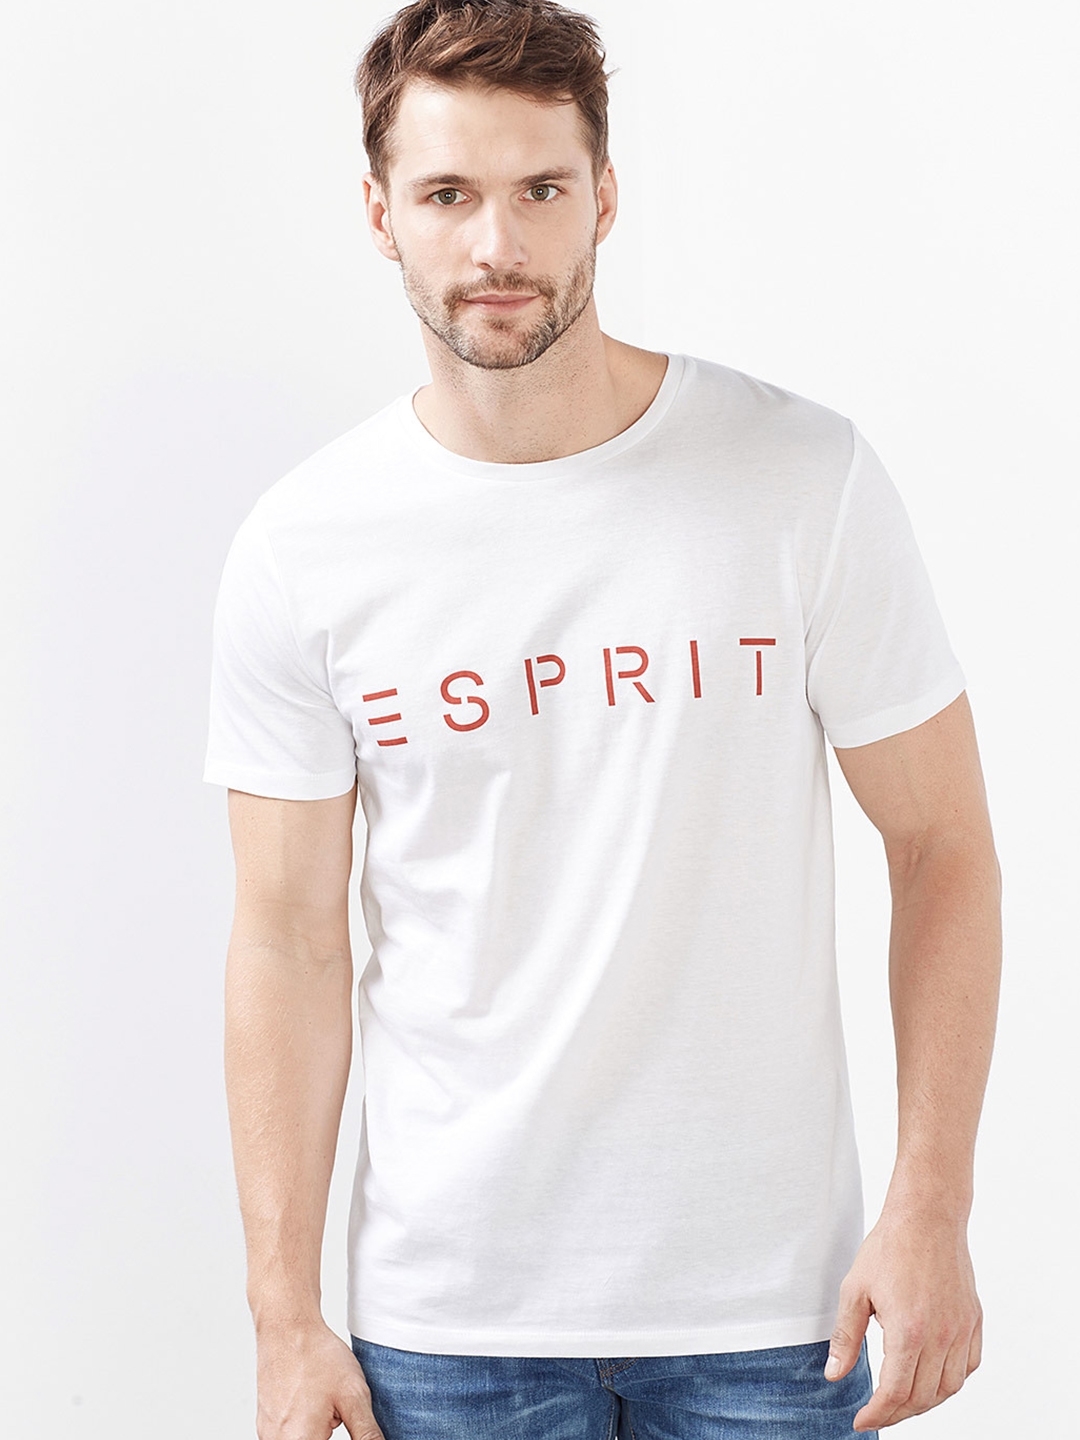 massa Attent Uitvoerbaar Buy ESPRIT Men White Printed Slim Fit Round Neck T Shirt - Tshirts for Men  1788579 | Myntra